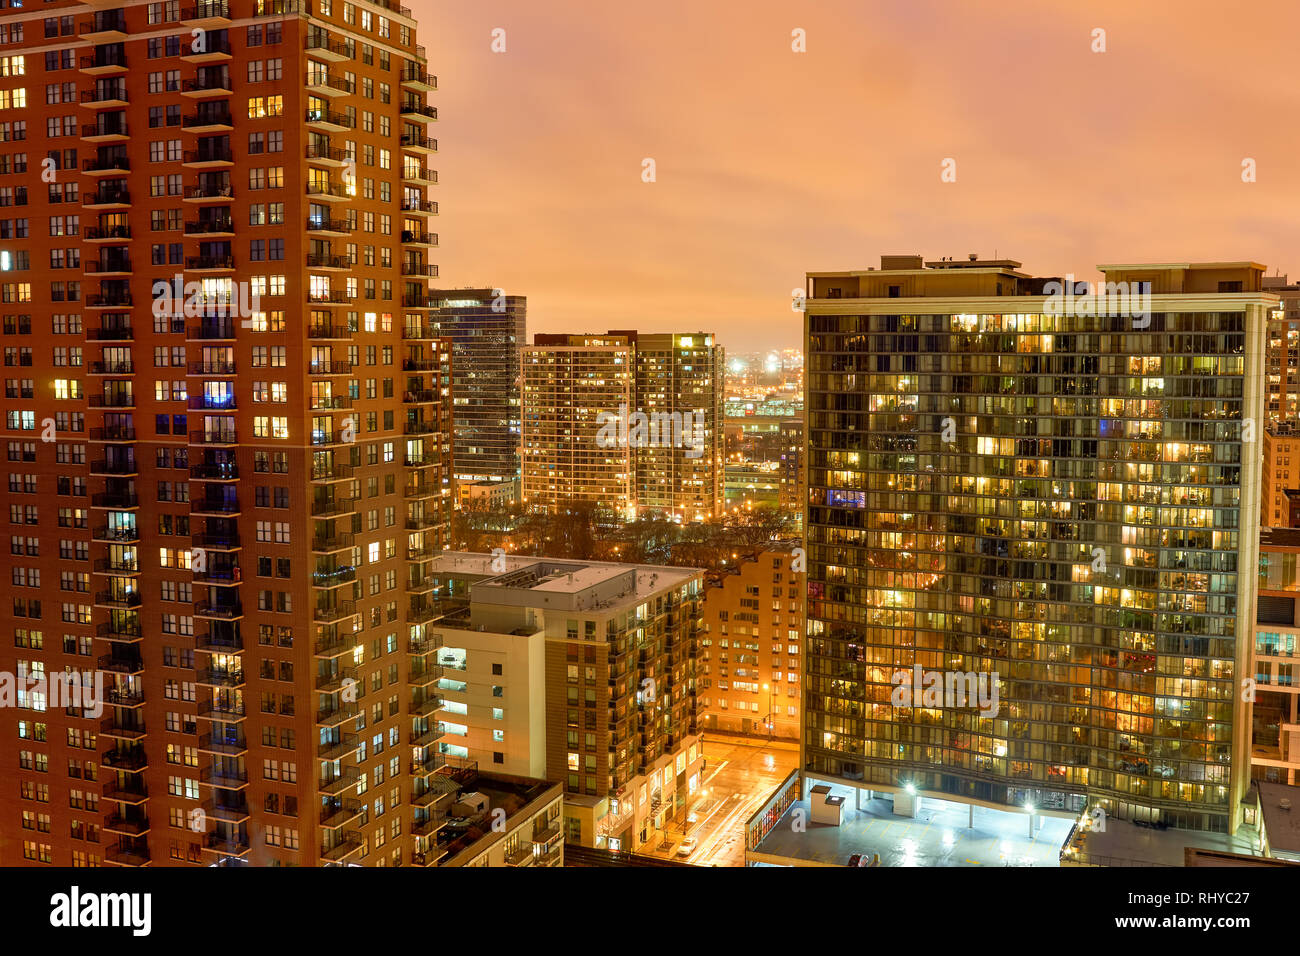 CHICAGO, IL - 27. MÄRZ 2016: Blick auf Chicago bei Nacht. Die Stadt ist eine internationale Drehscheibe für Finanzen, Handel, Industrie, Technik, telecommunicatio Stockfoto